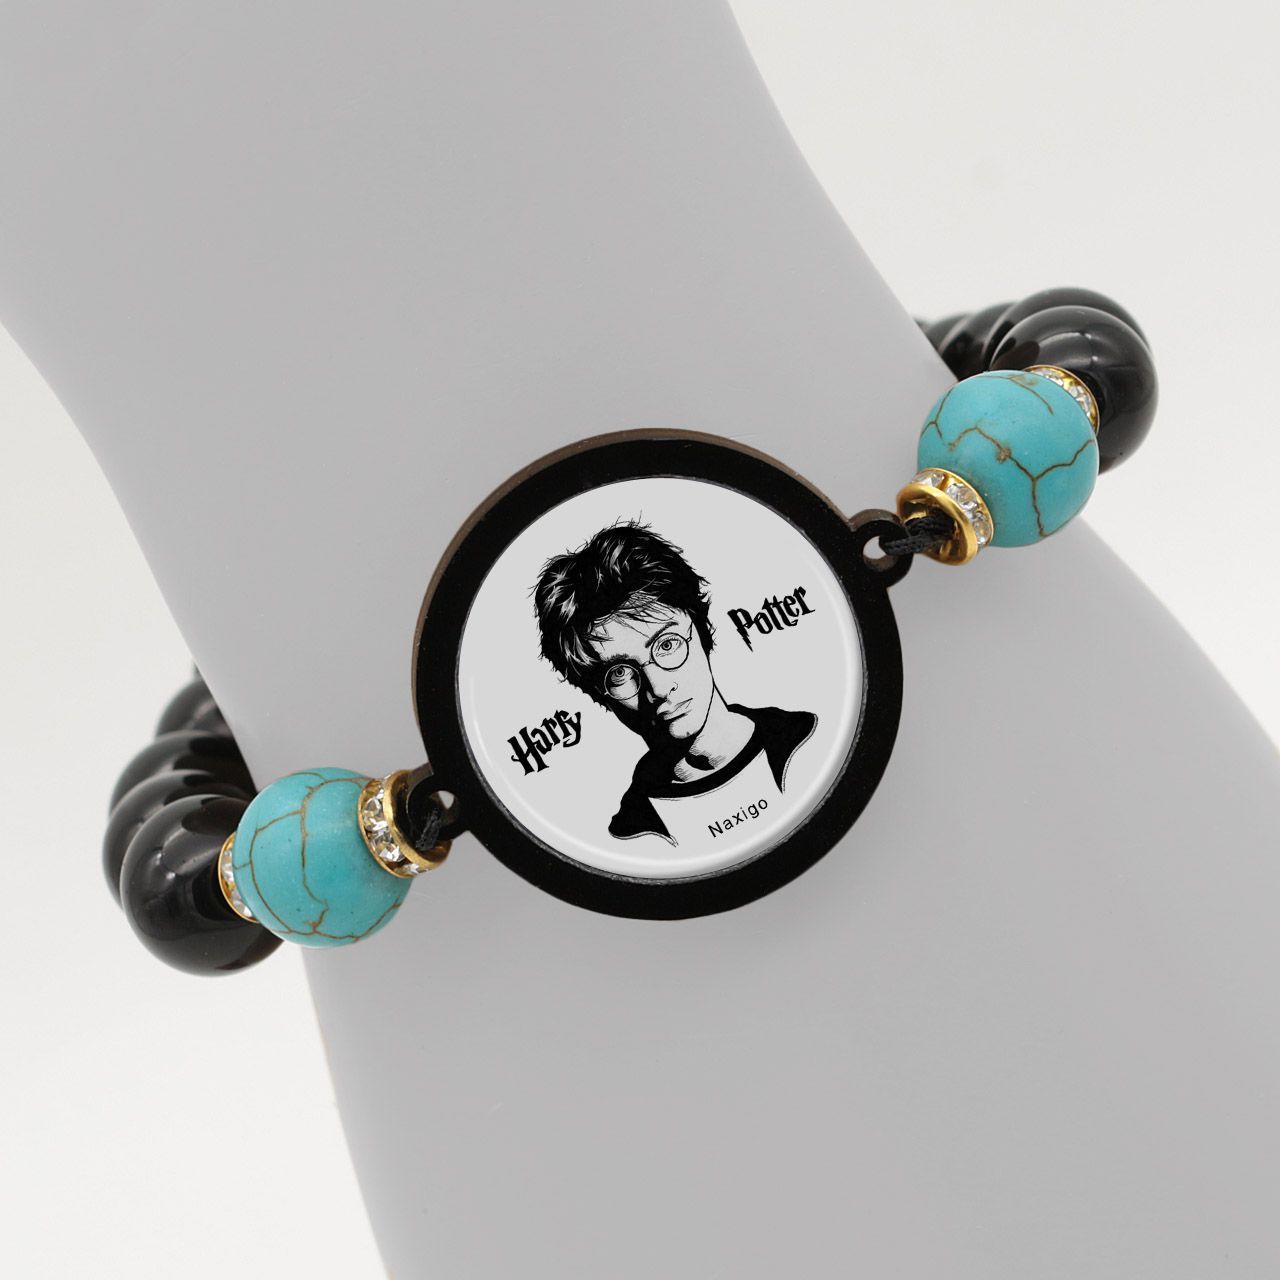 دستبند زنانه ناکسیگو طرح هری پاتر کد BR4015 -  - 6